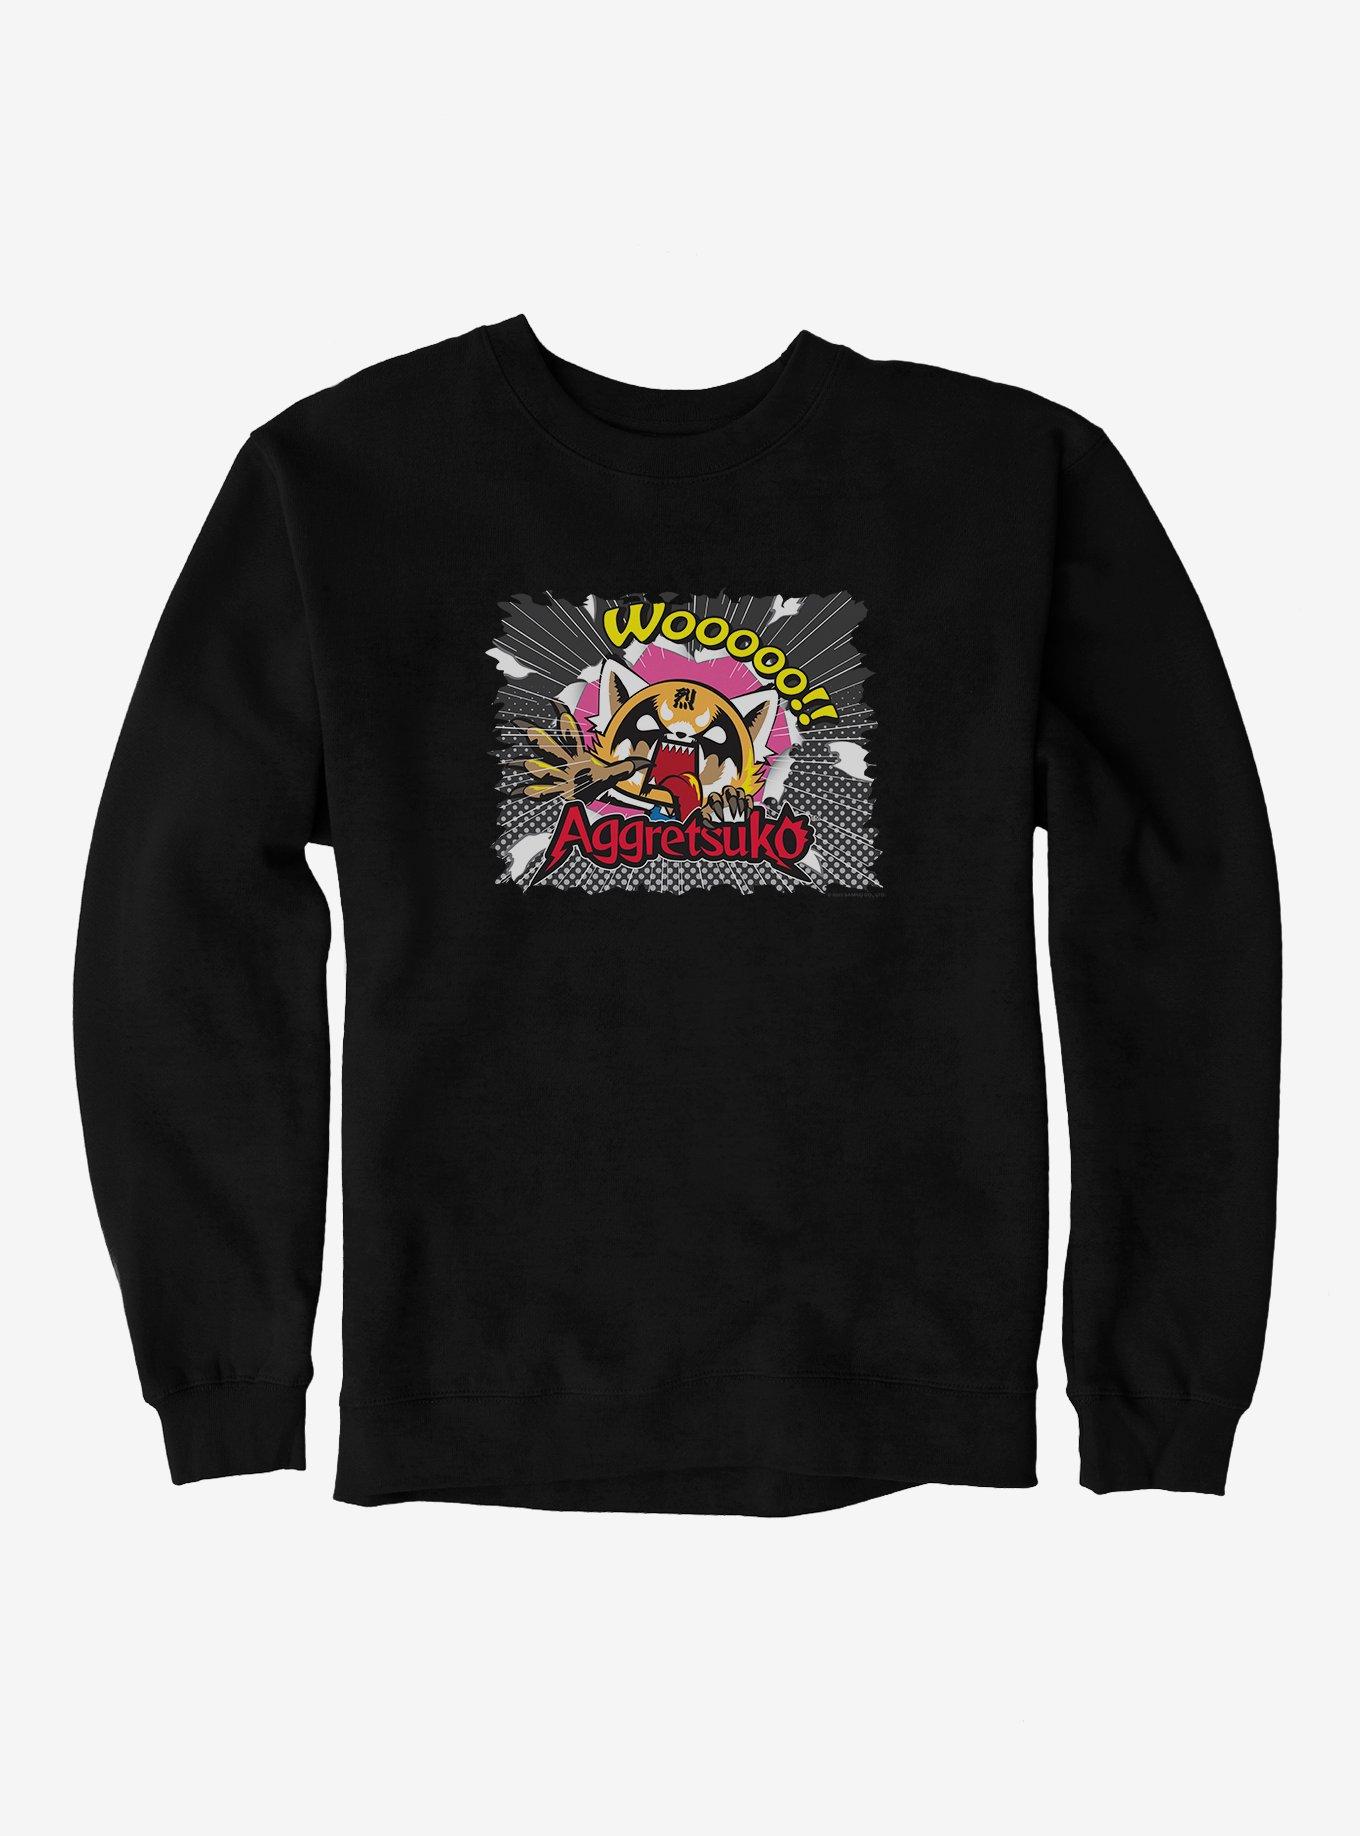 Aggretsuko Dark Breakout Sweatshirt